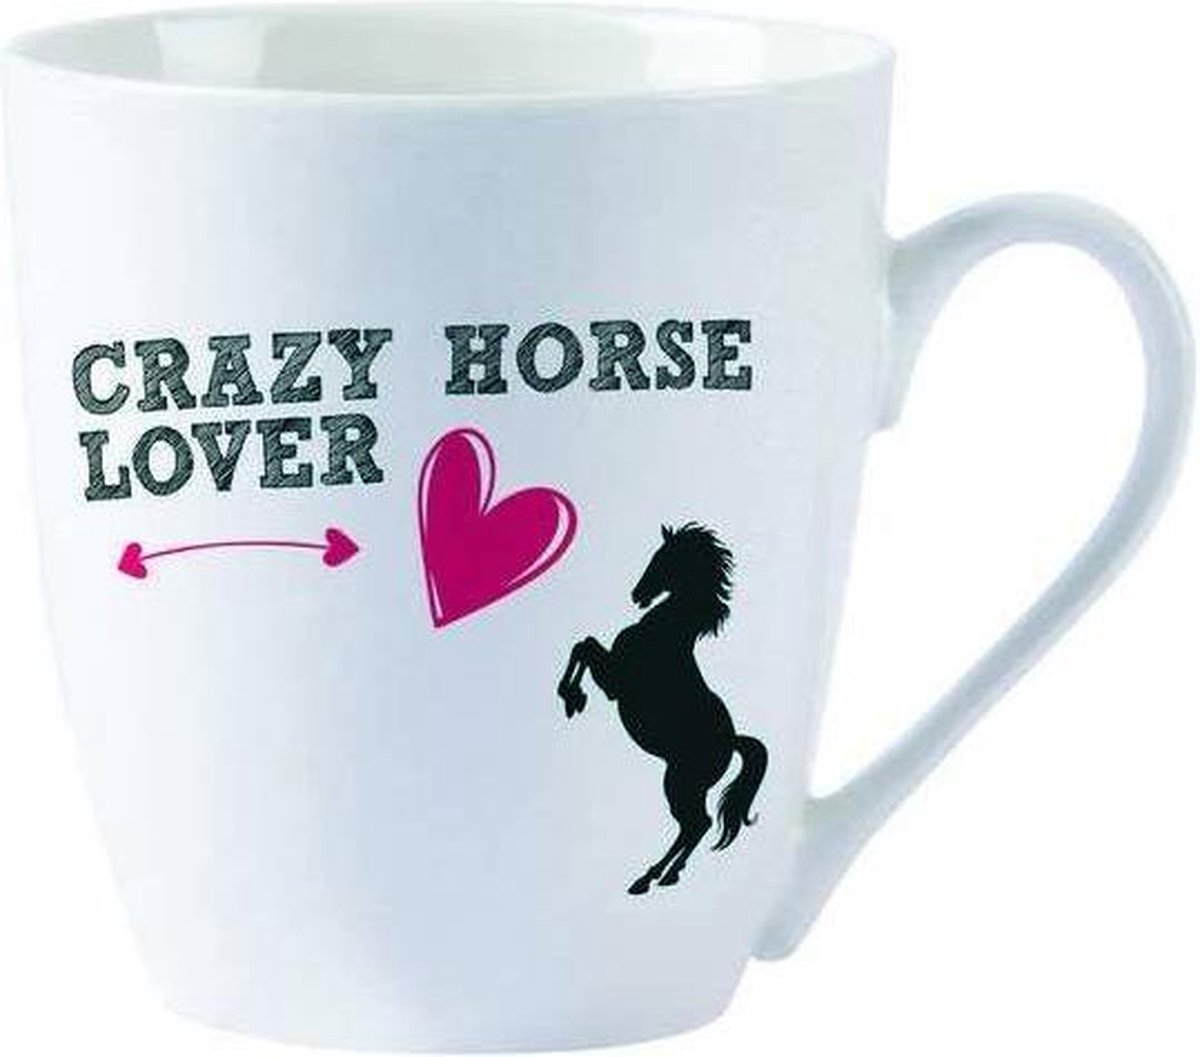 Mok Crazy Horse Lover